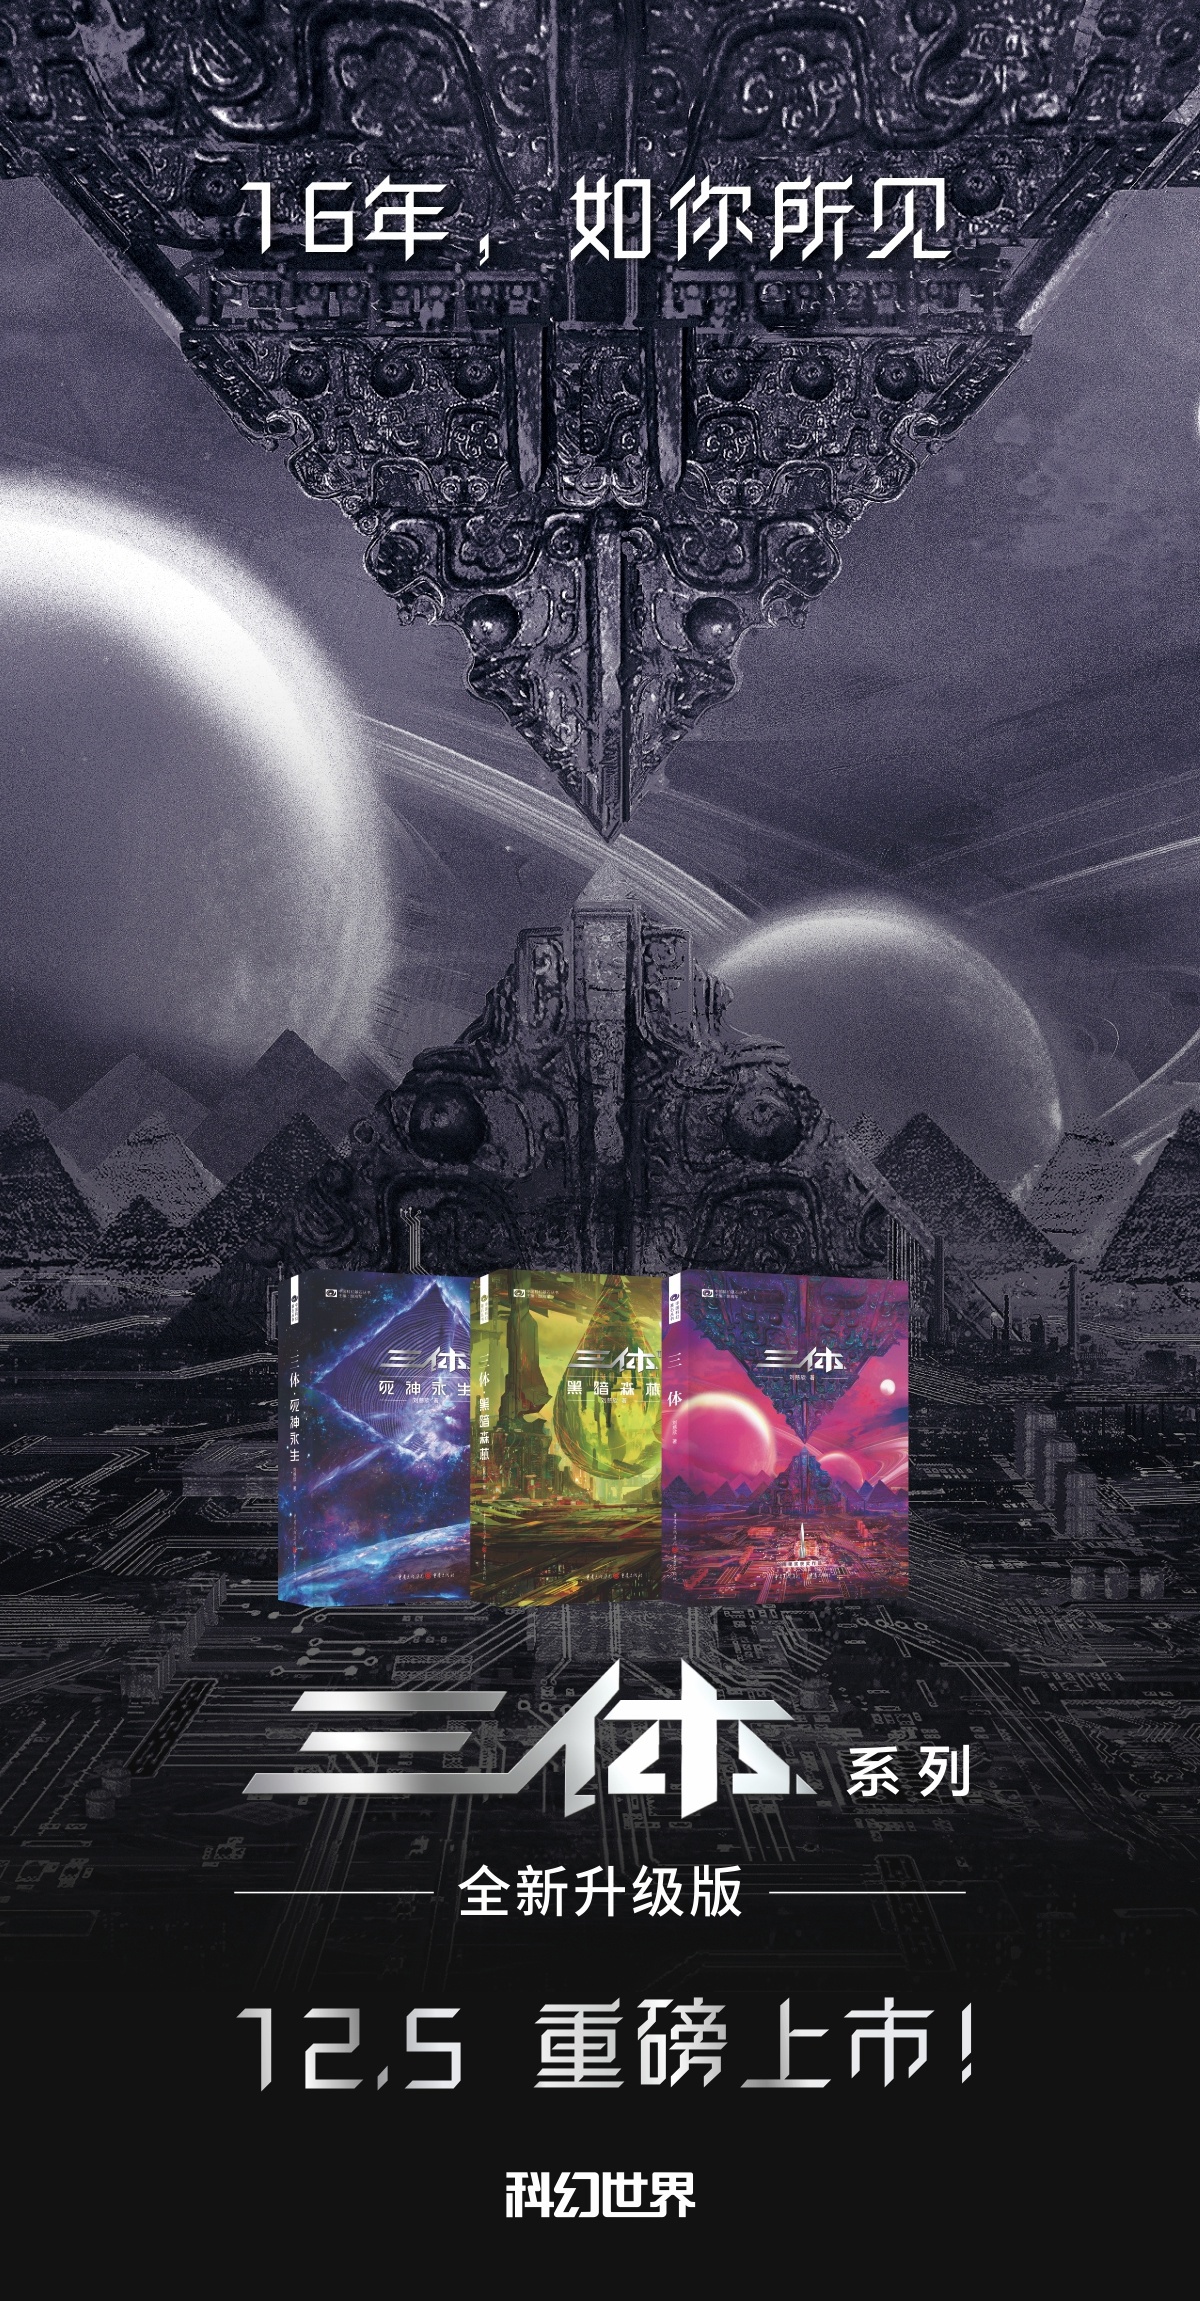 国产科幻小说之光，新版《三体》系列将于 12 月 5 日上市